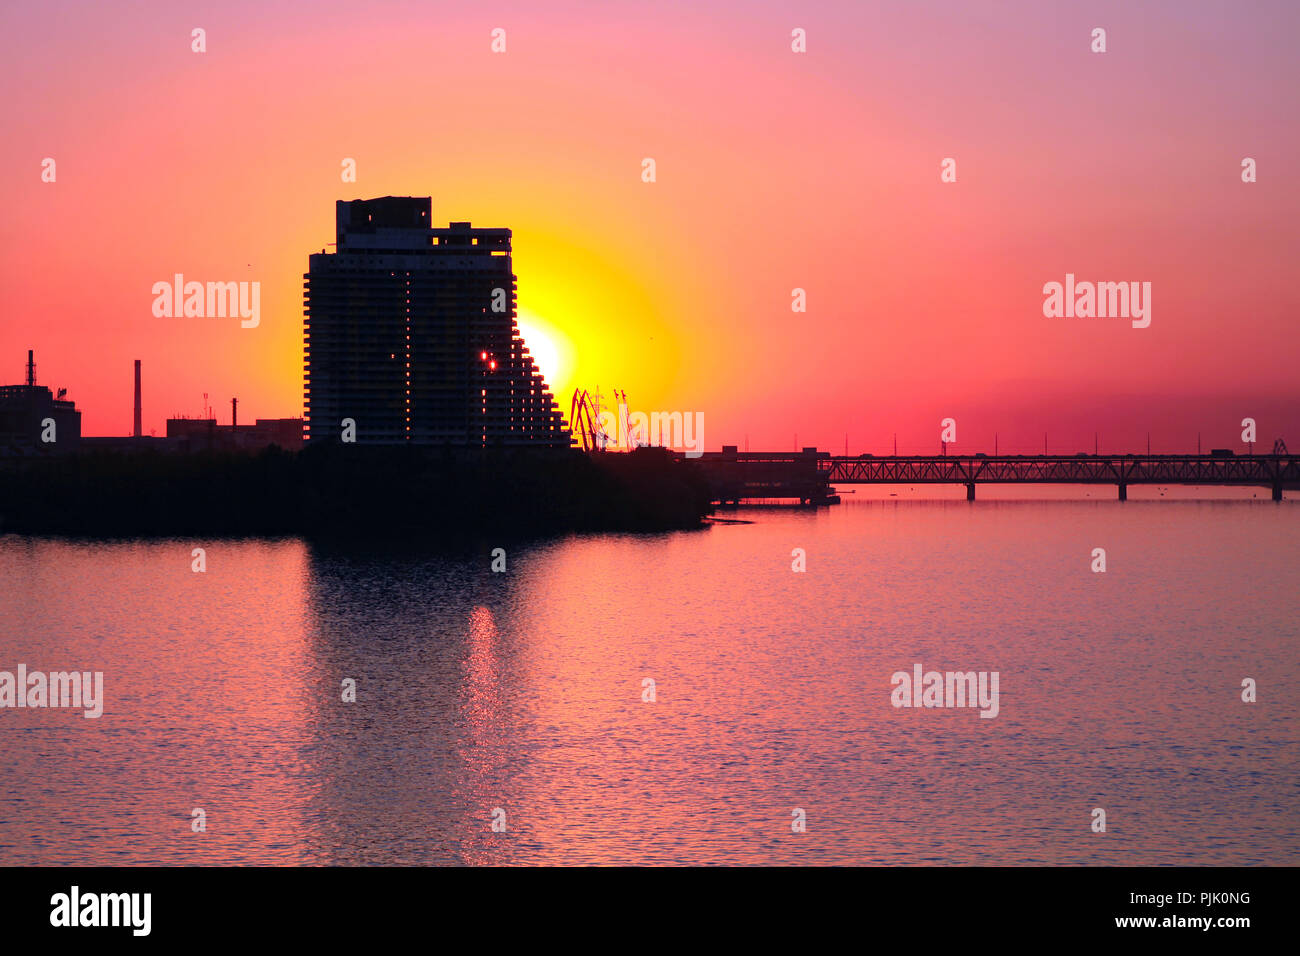 Silhouette d'un gratte-ciel et pont sur un coucher de soleil rose, fond sur le Dniepr dans le Dniepr Dniepropetrovsk, Dnepr (ville), de l'Ukraine. Banque D'Images